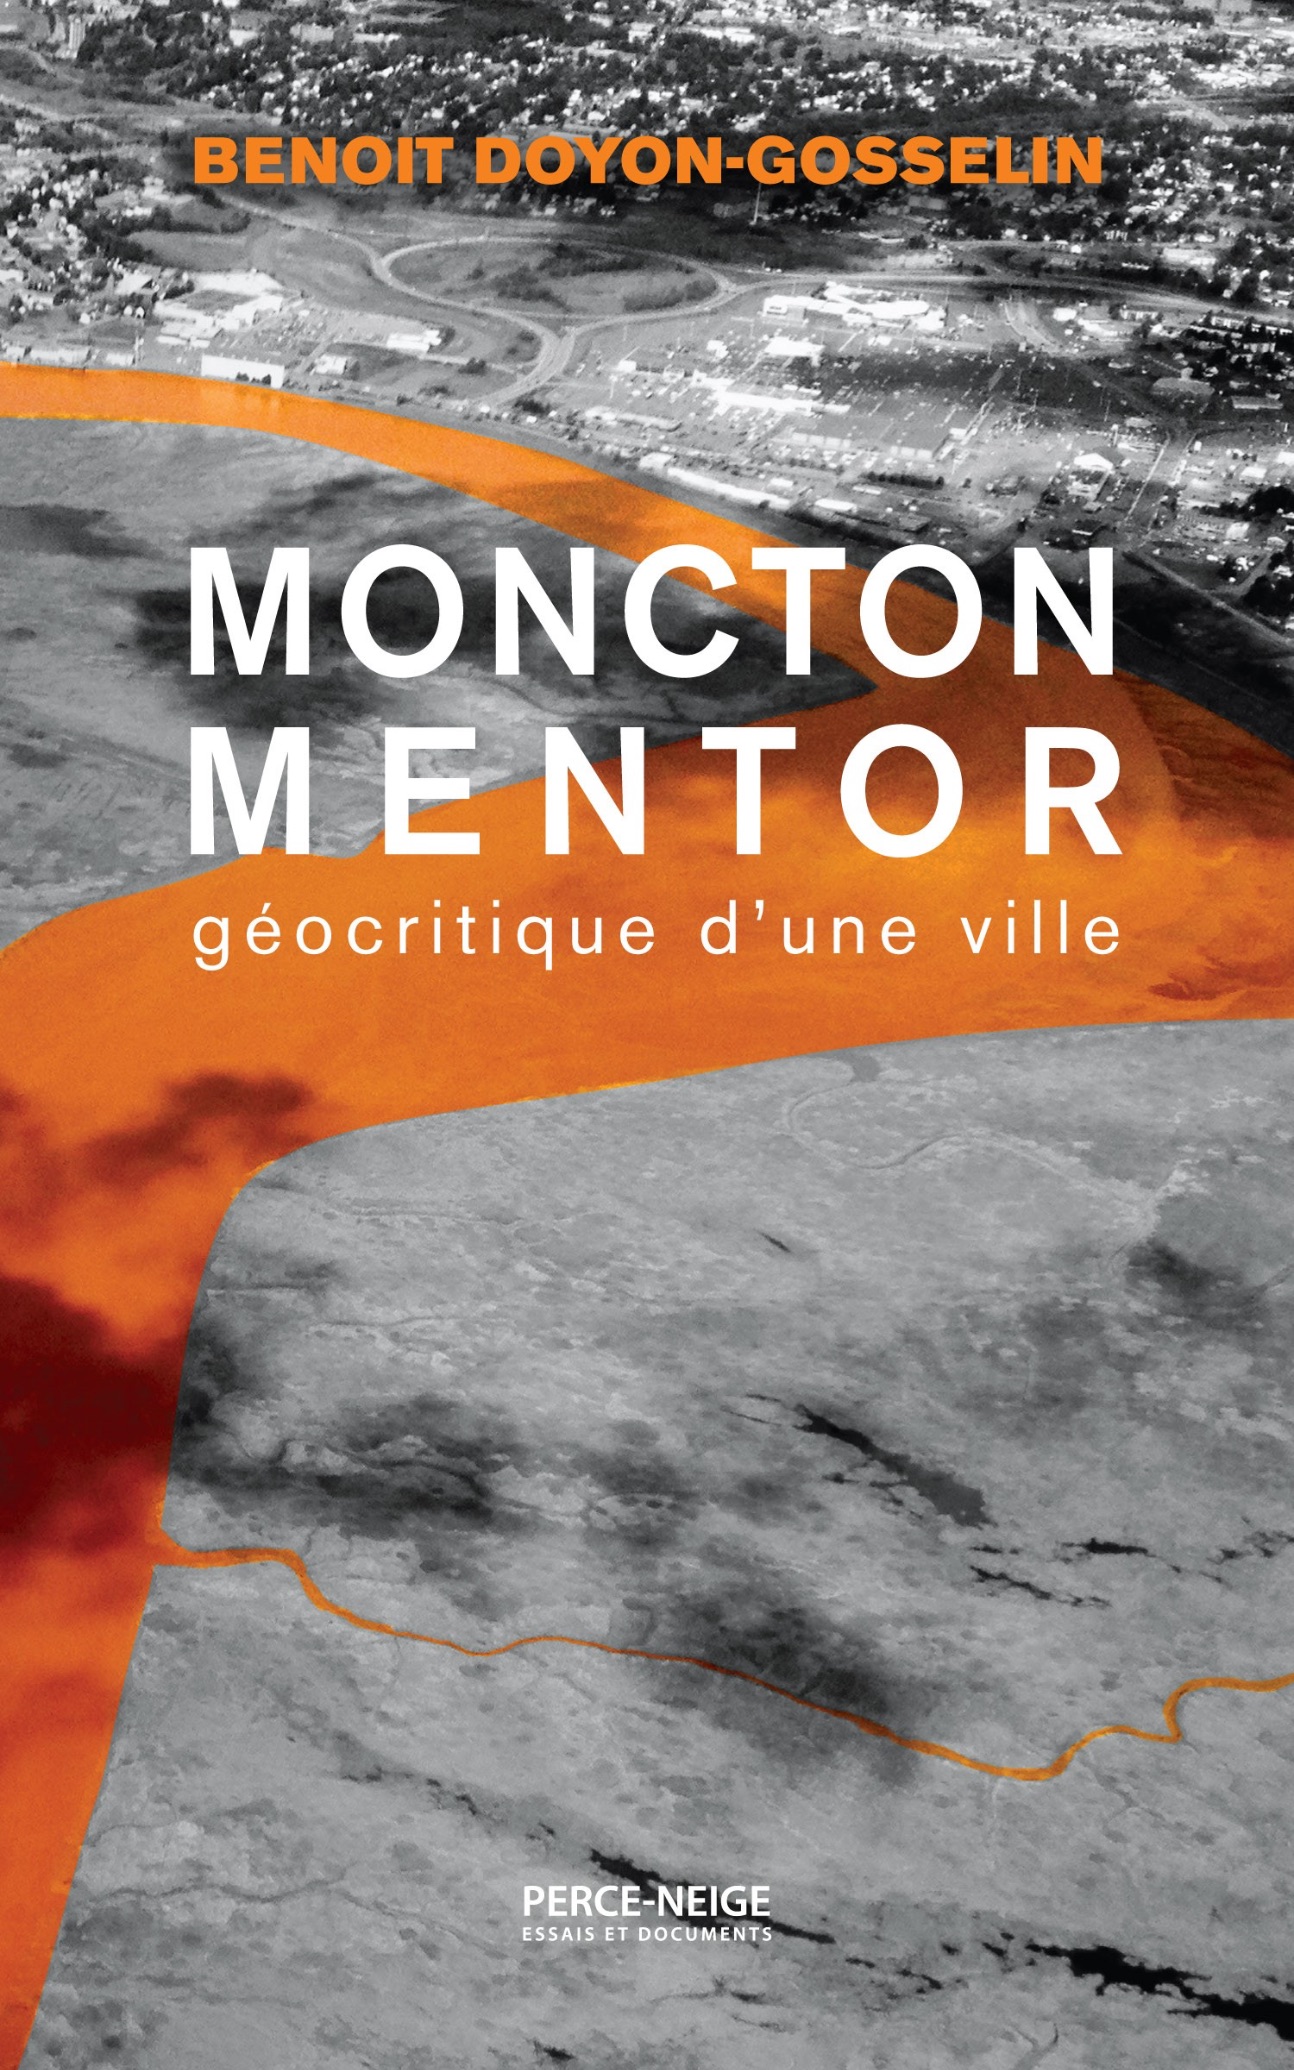 Benoit Doyon-Gosselin, Moncton mentor. Géocritique d'une ville